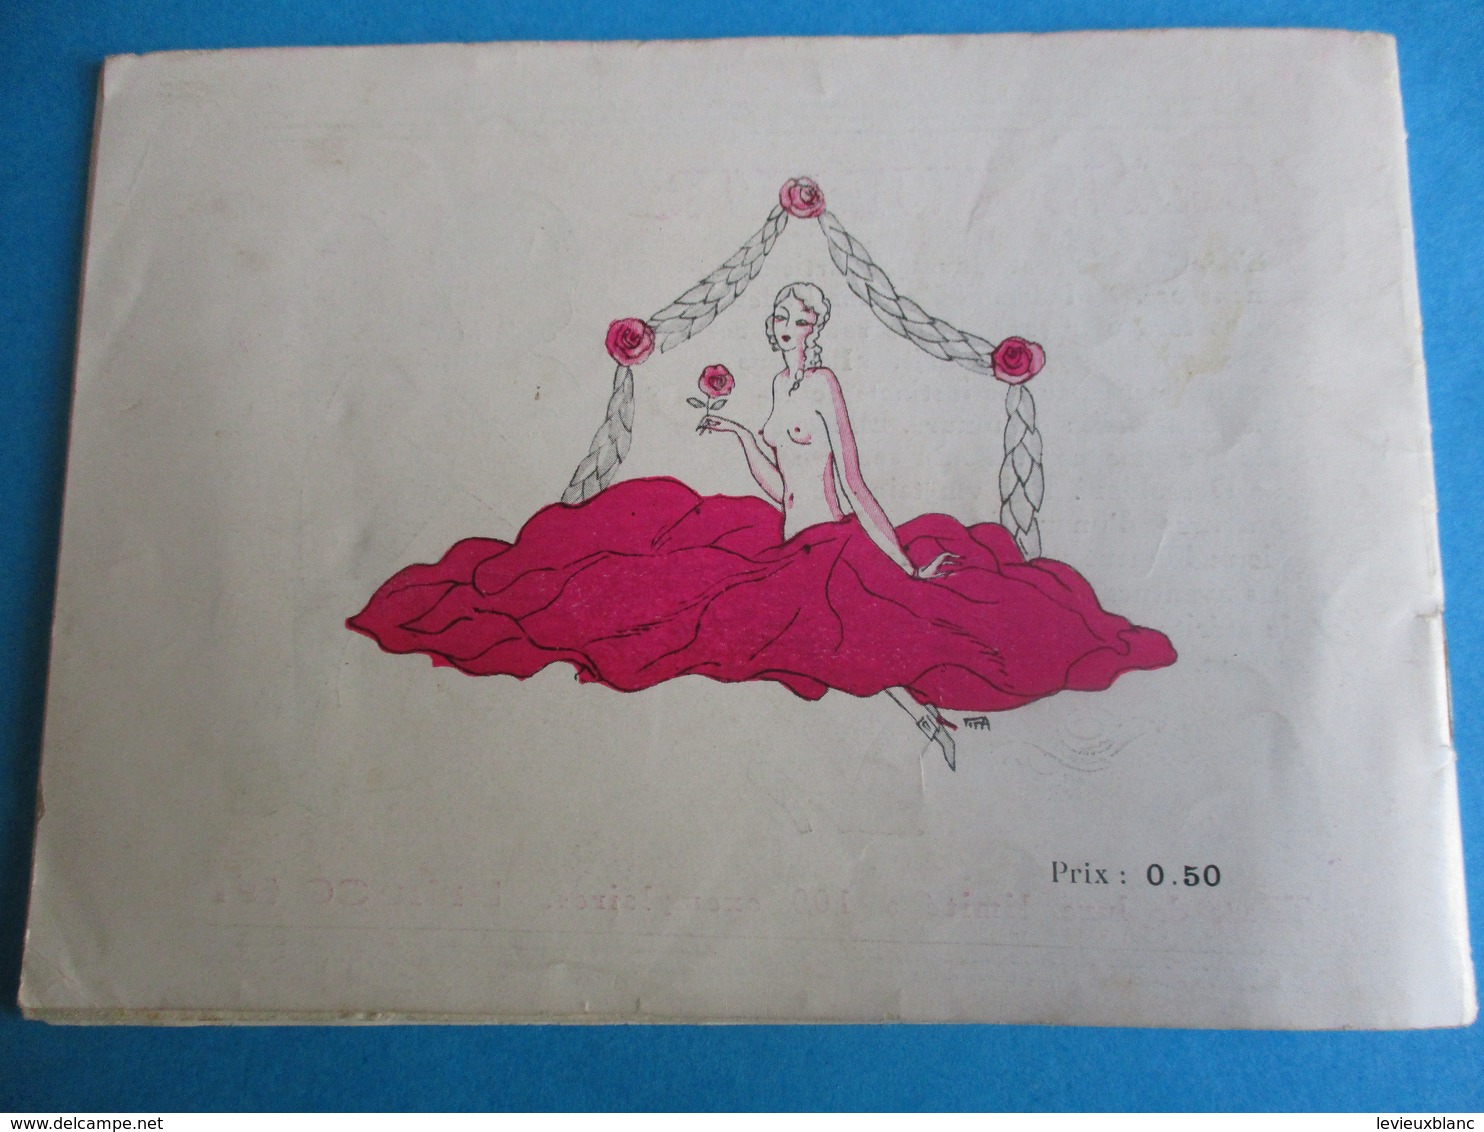 Petit catalogue/ Les Editions libertines / Livres rares et curieux/Erotisme/Vers 1920-1940         CAT242